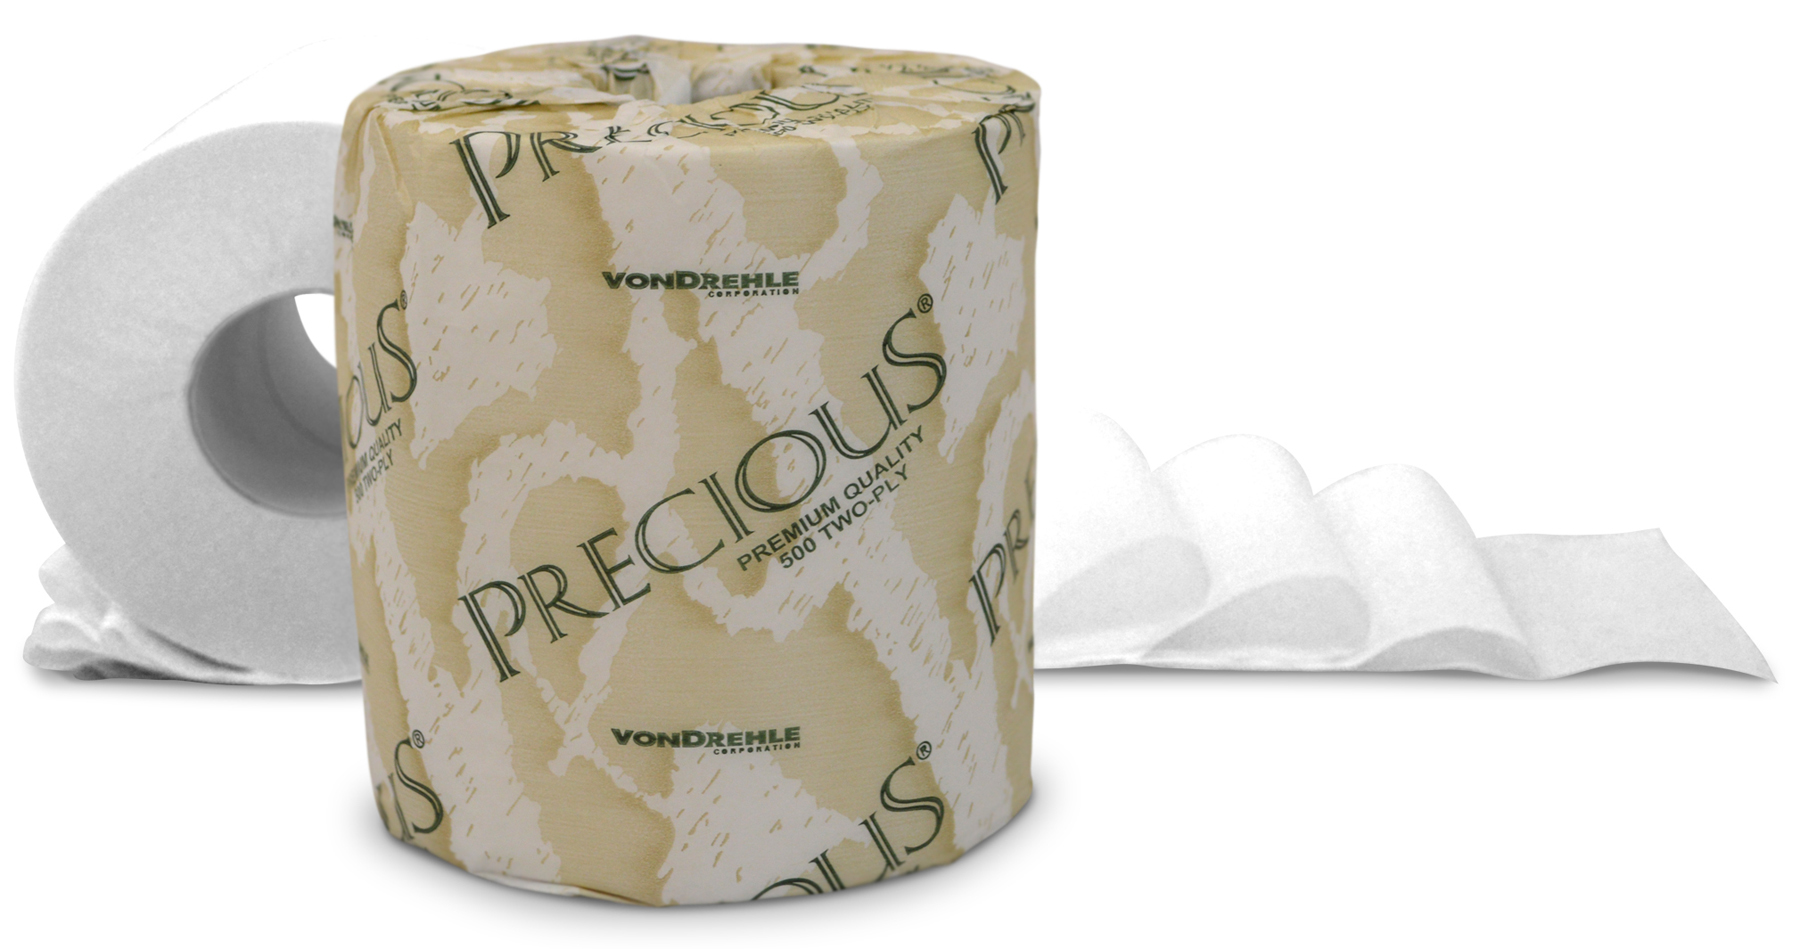 8215 Precious bath tissue 2-ply 96/500s/cs 25cs/skid